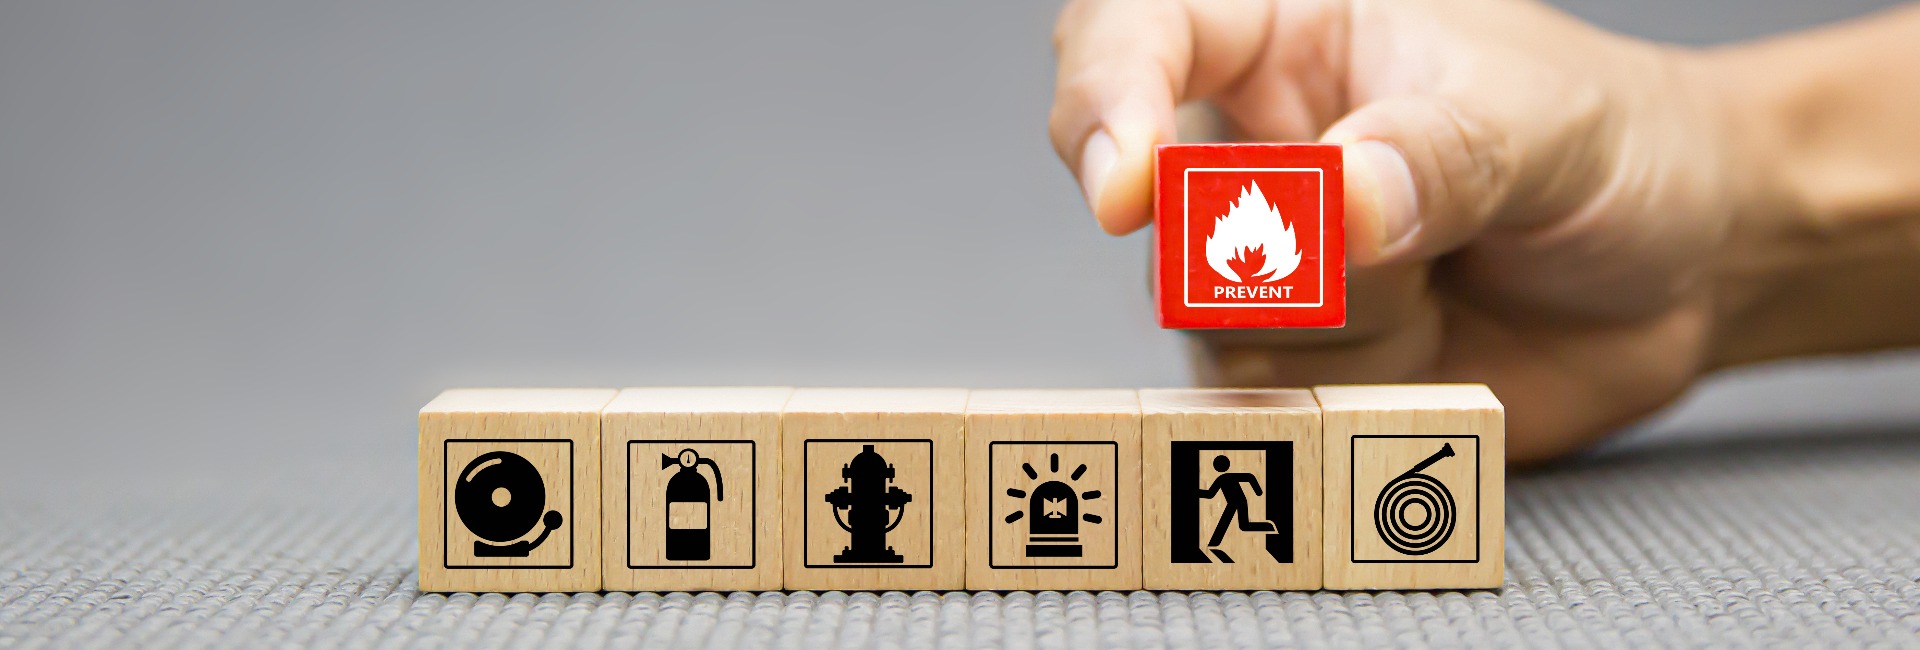 Holzklötze mit Icons zum Thema Brandschutz